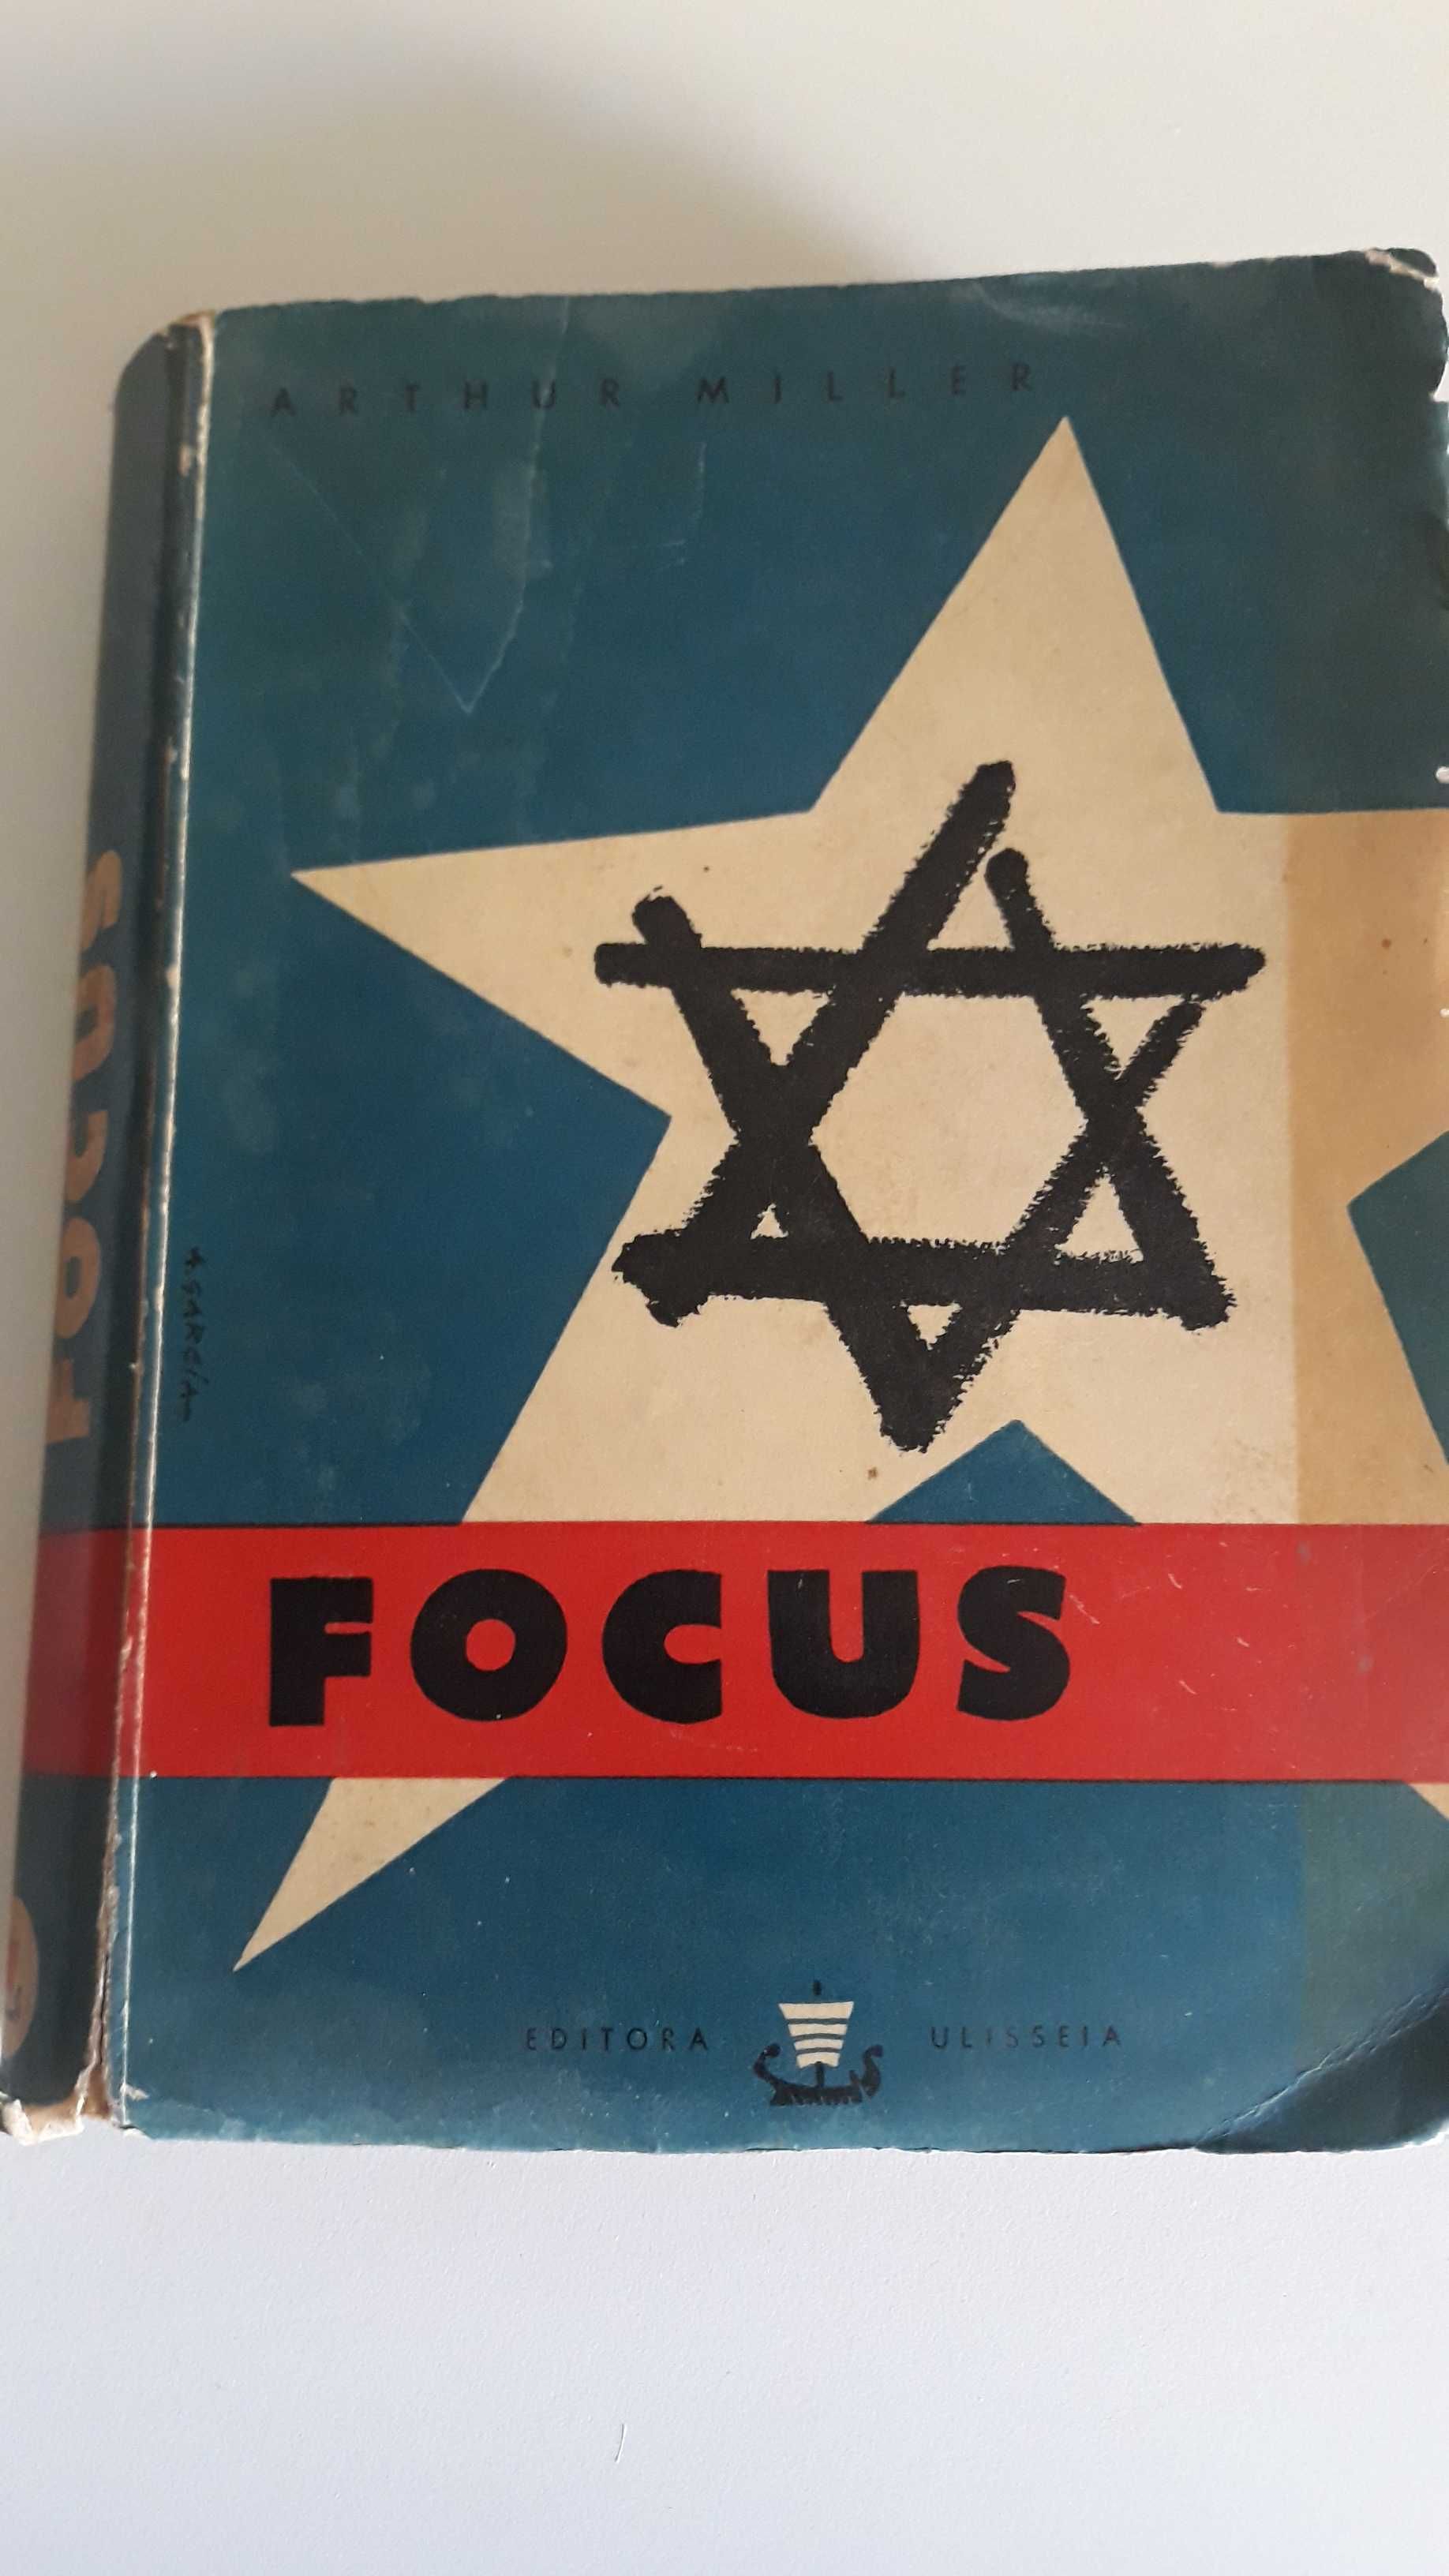 Focus, de Arthur Miller